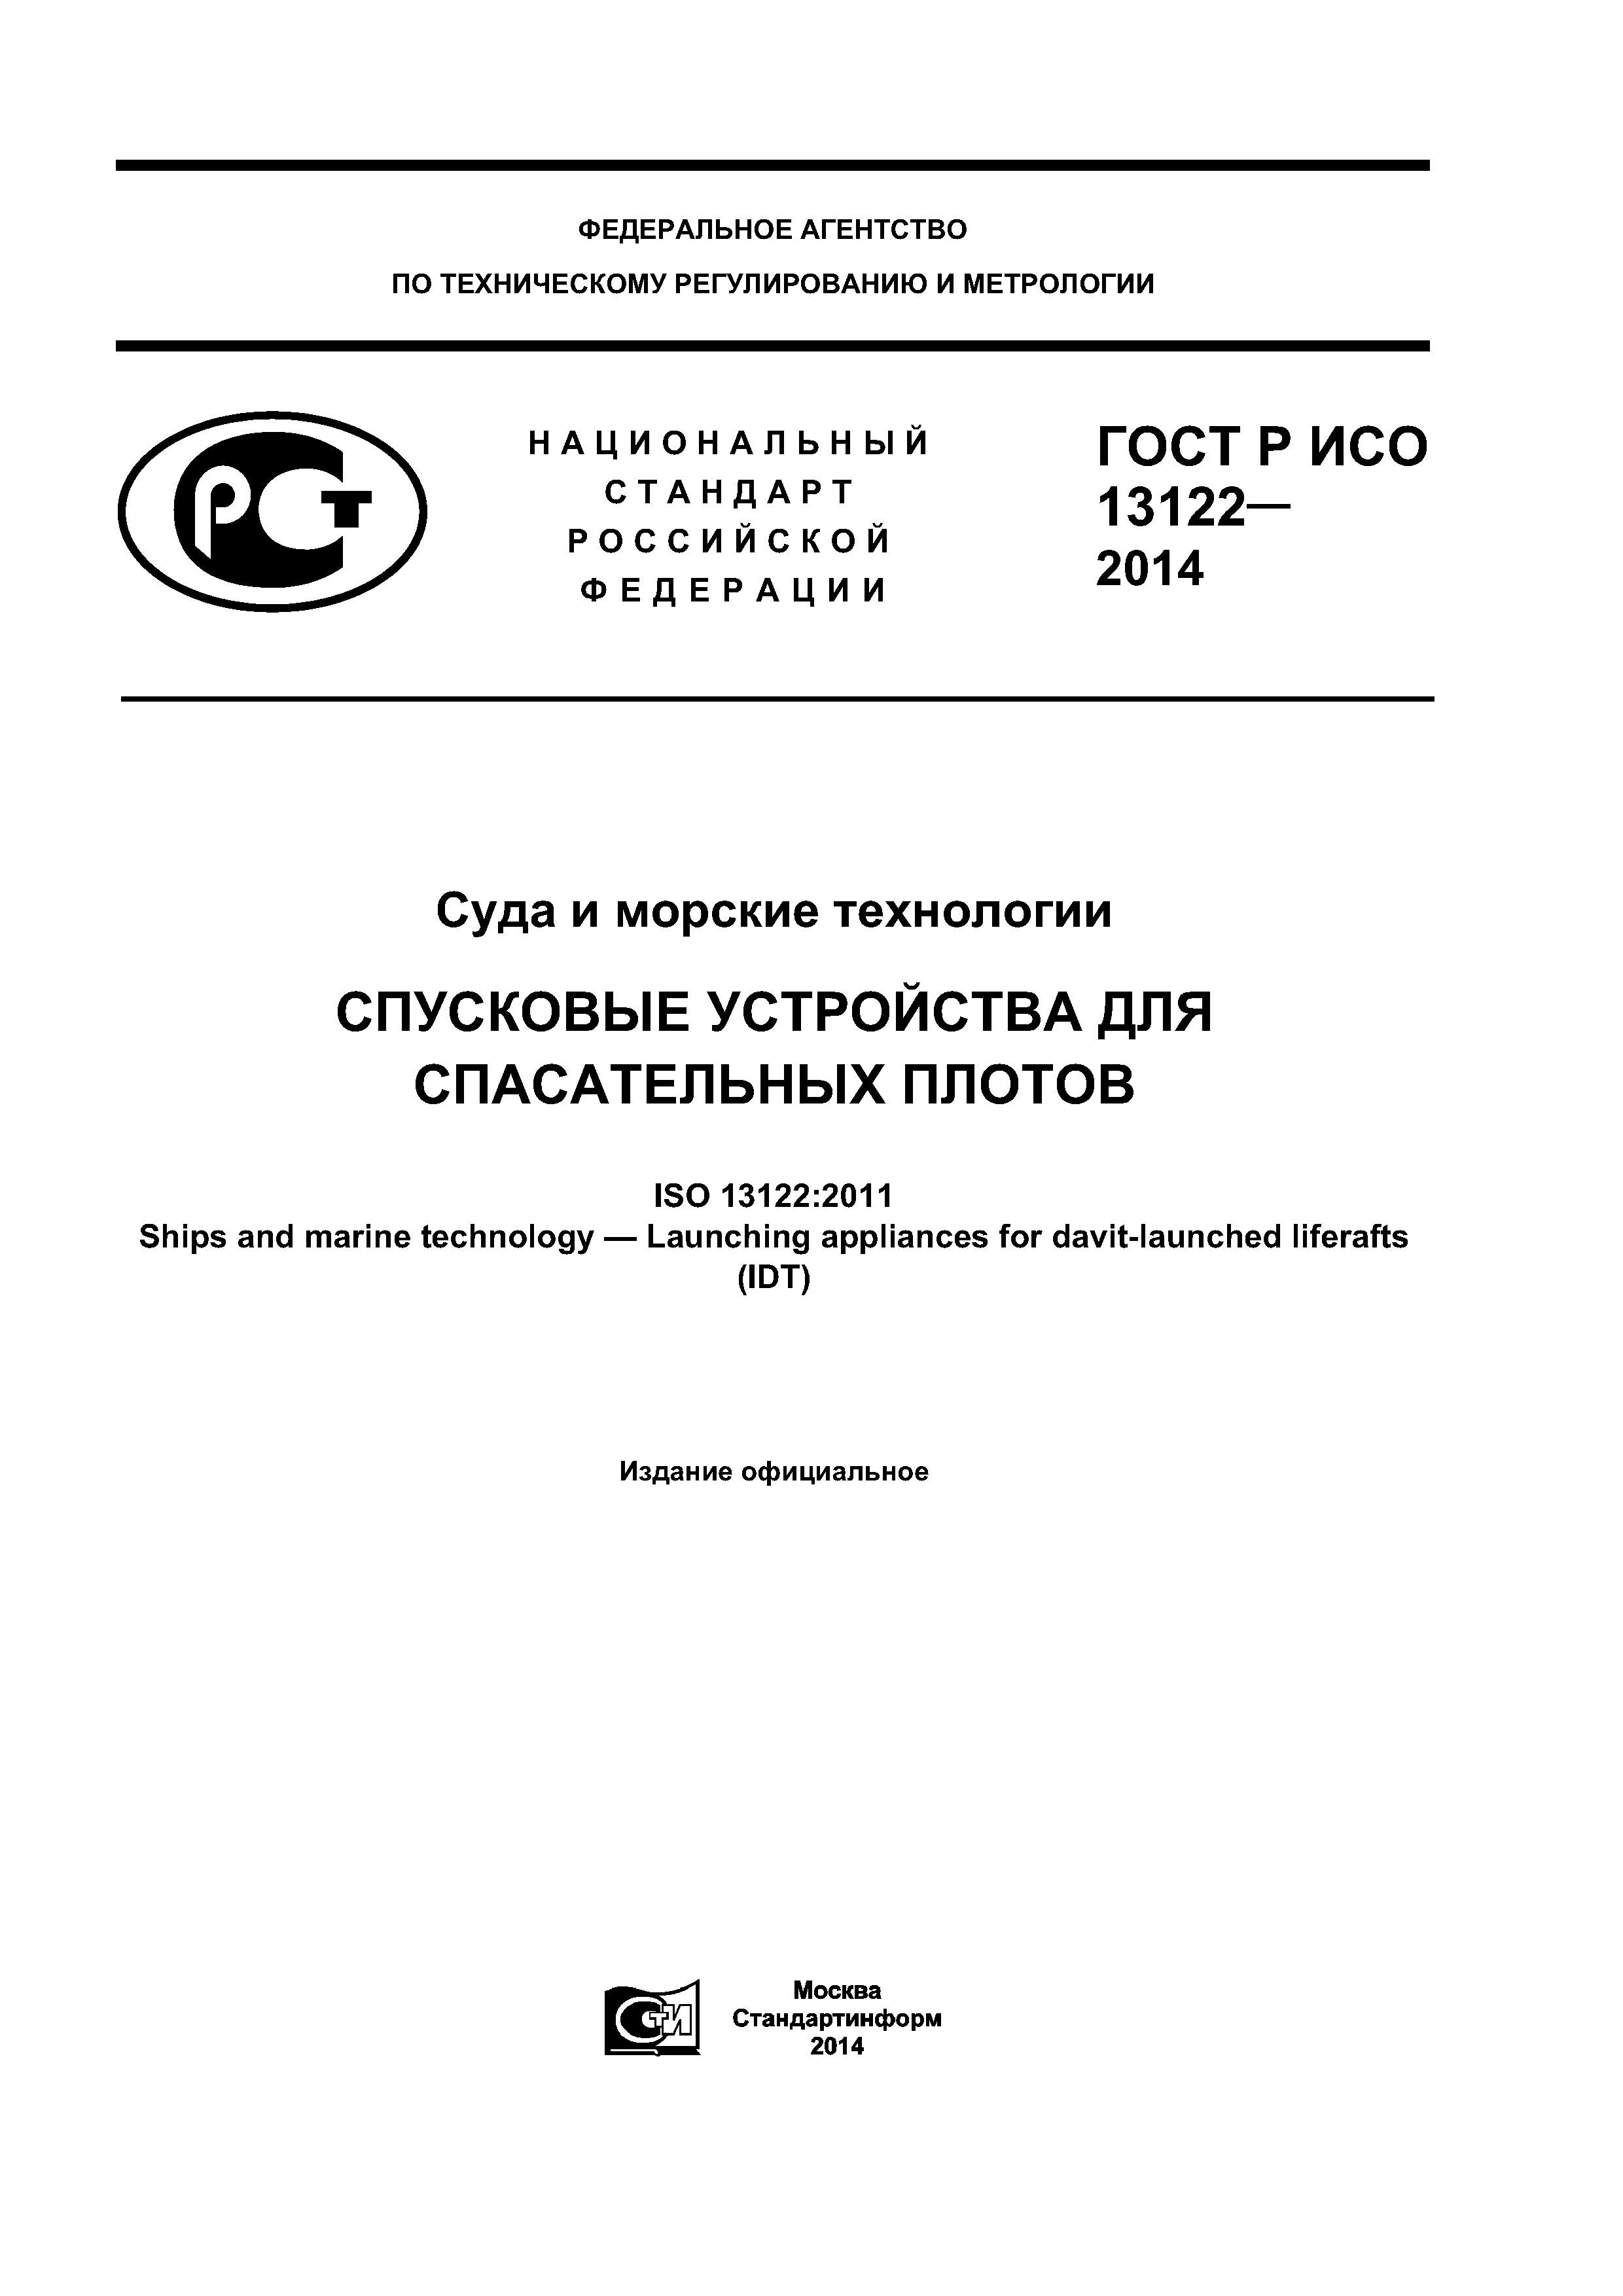 ГОСТ Р ИСО 13122-2014